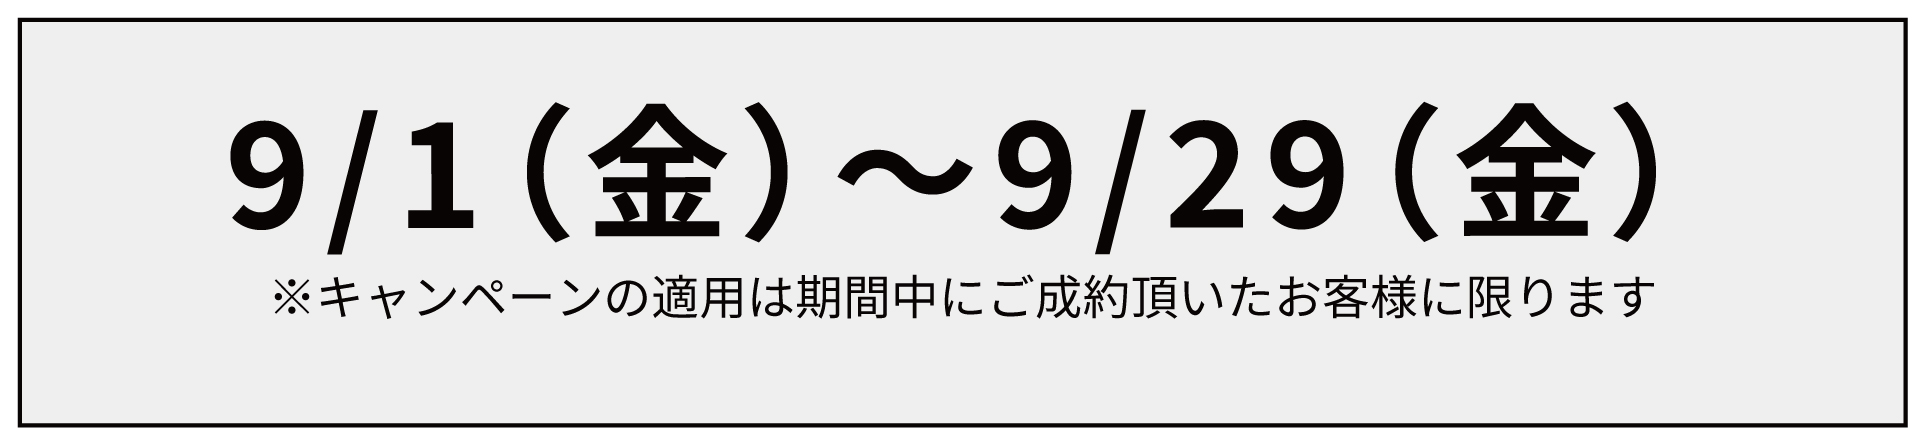 【9月限定】ハイスピードサービス半額キャンペーン_モバイル